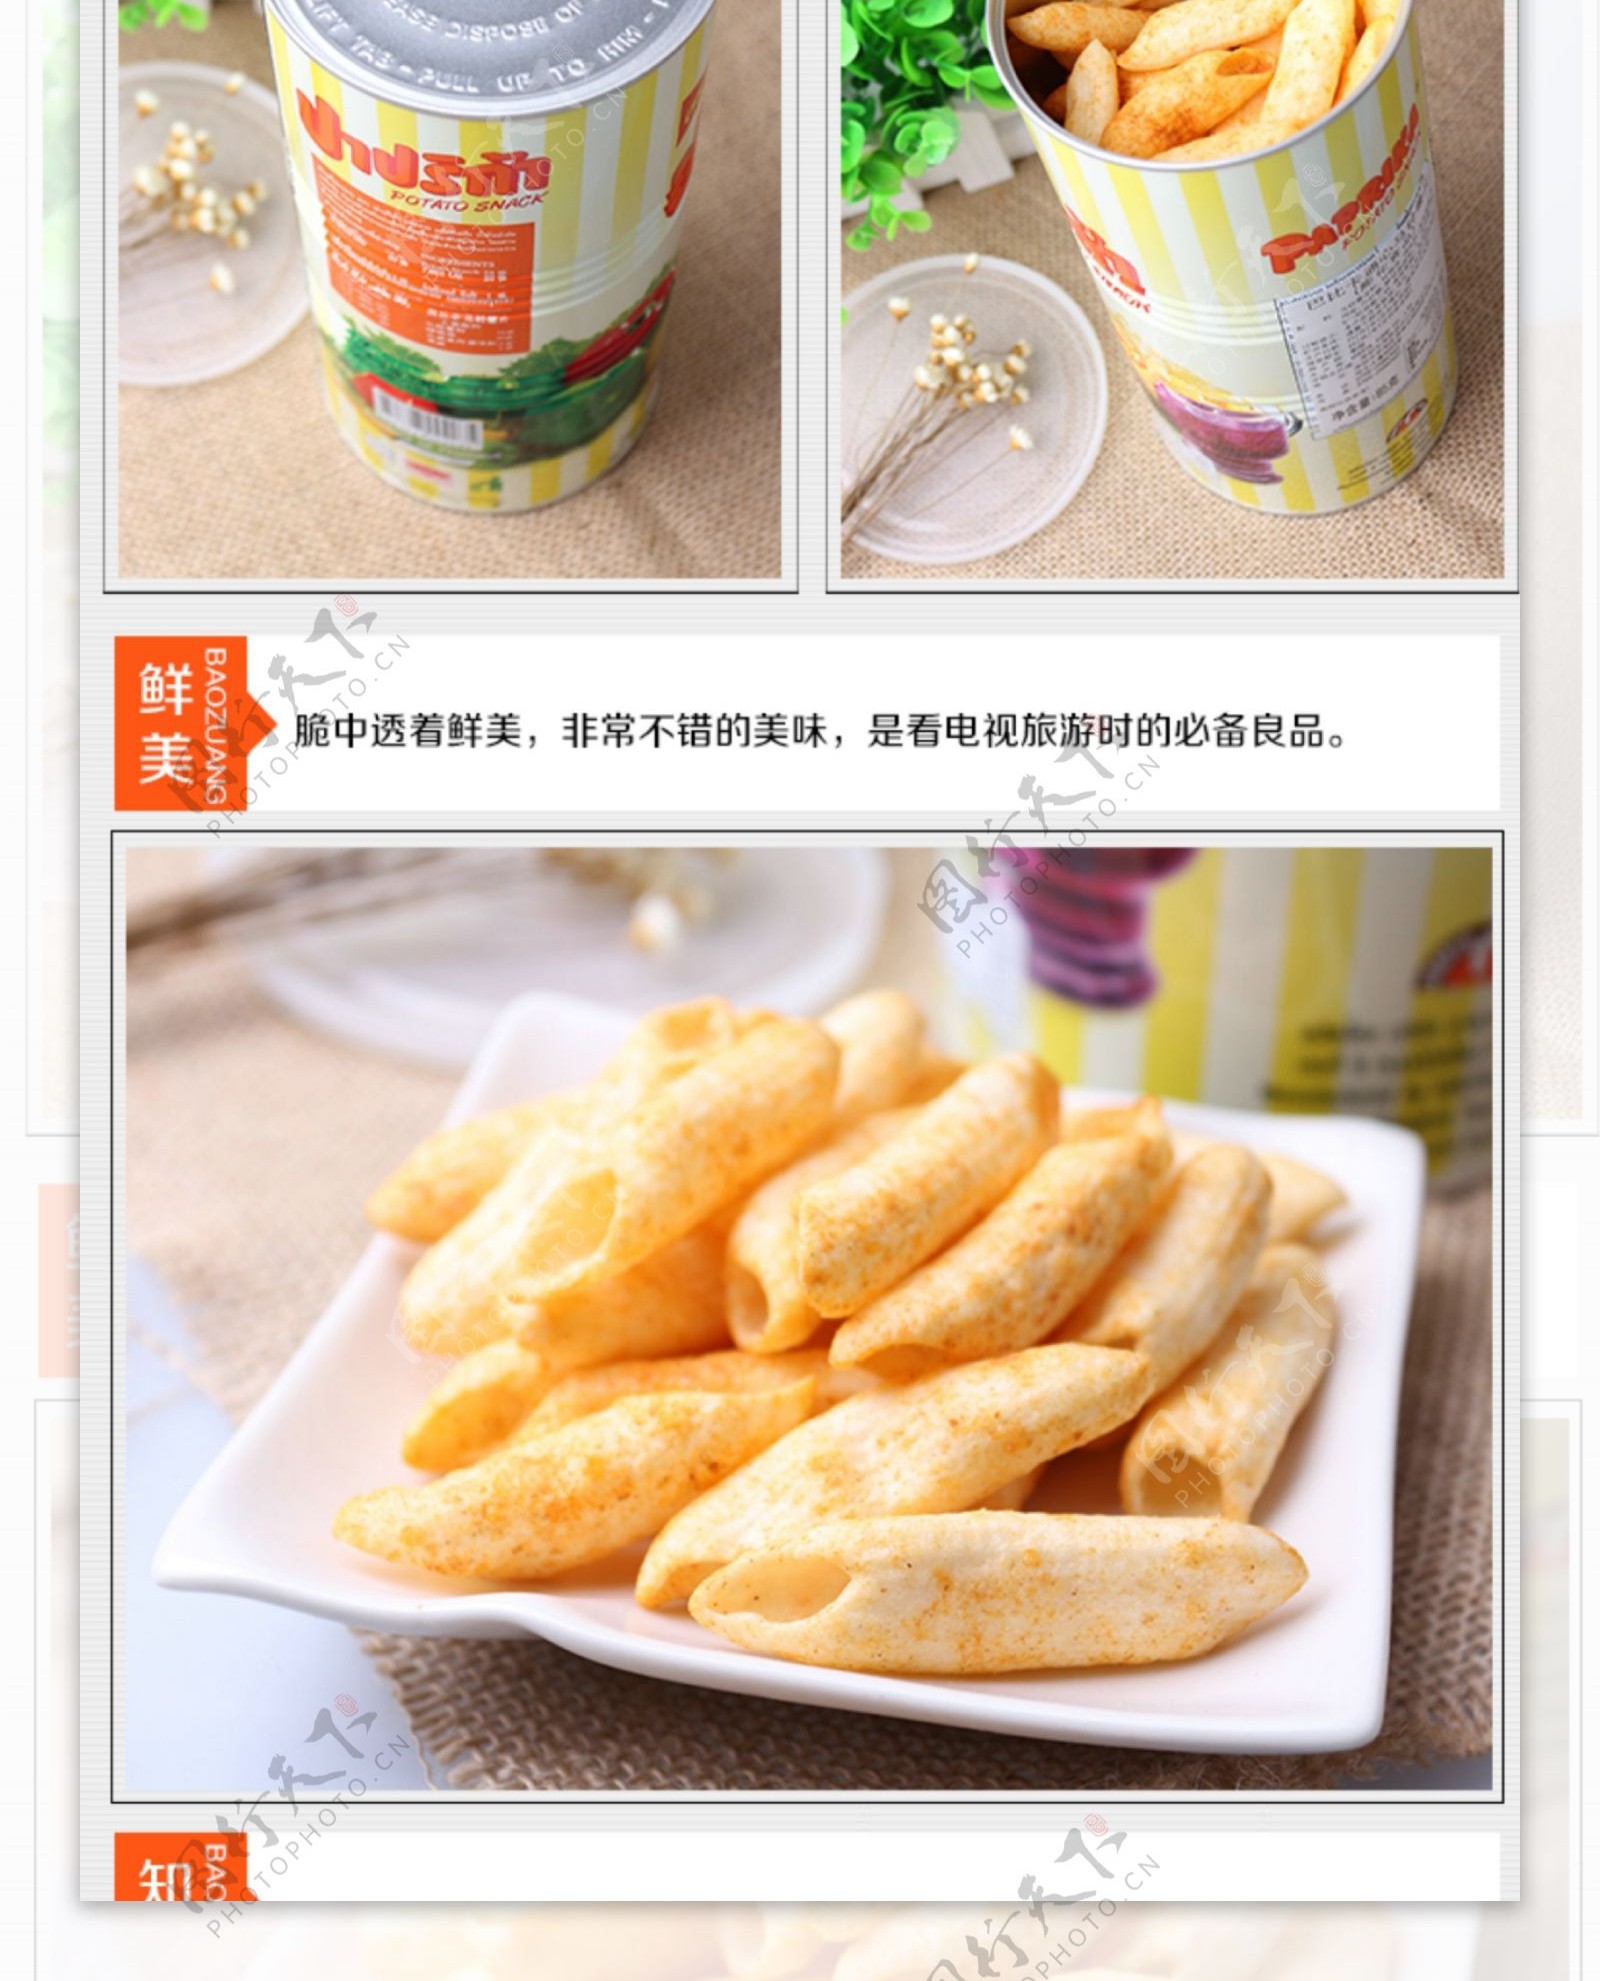 详情页进口食品马铃薯泰国进口页面